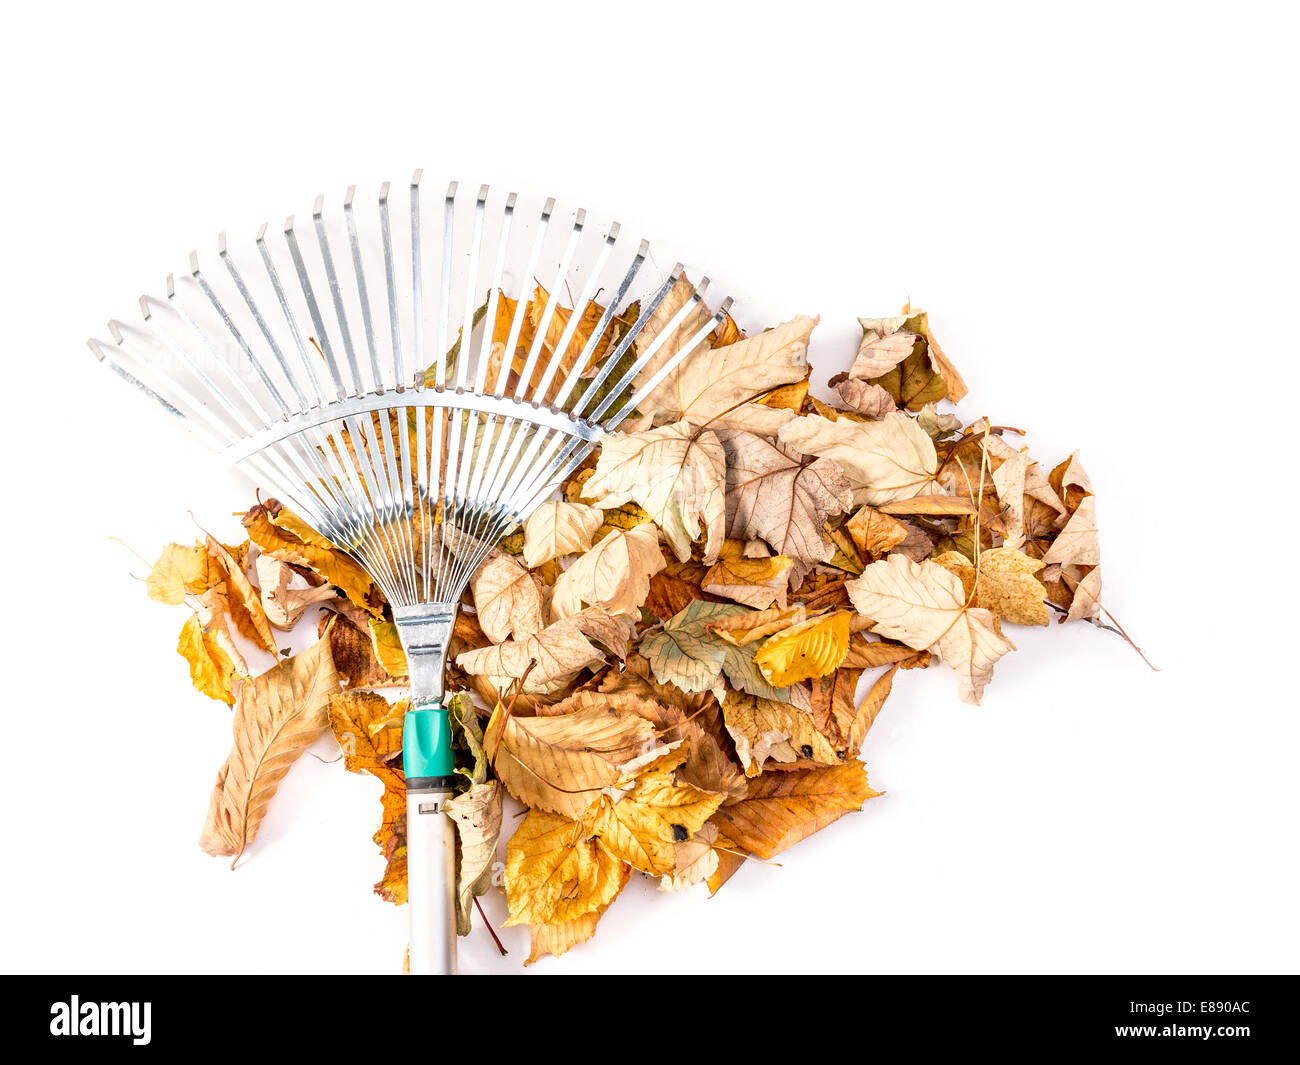 Pile de feuilles automne mort balayé par fan de metal rake shot on white Banque D'Images